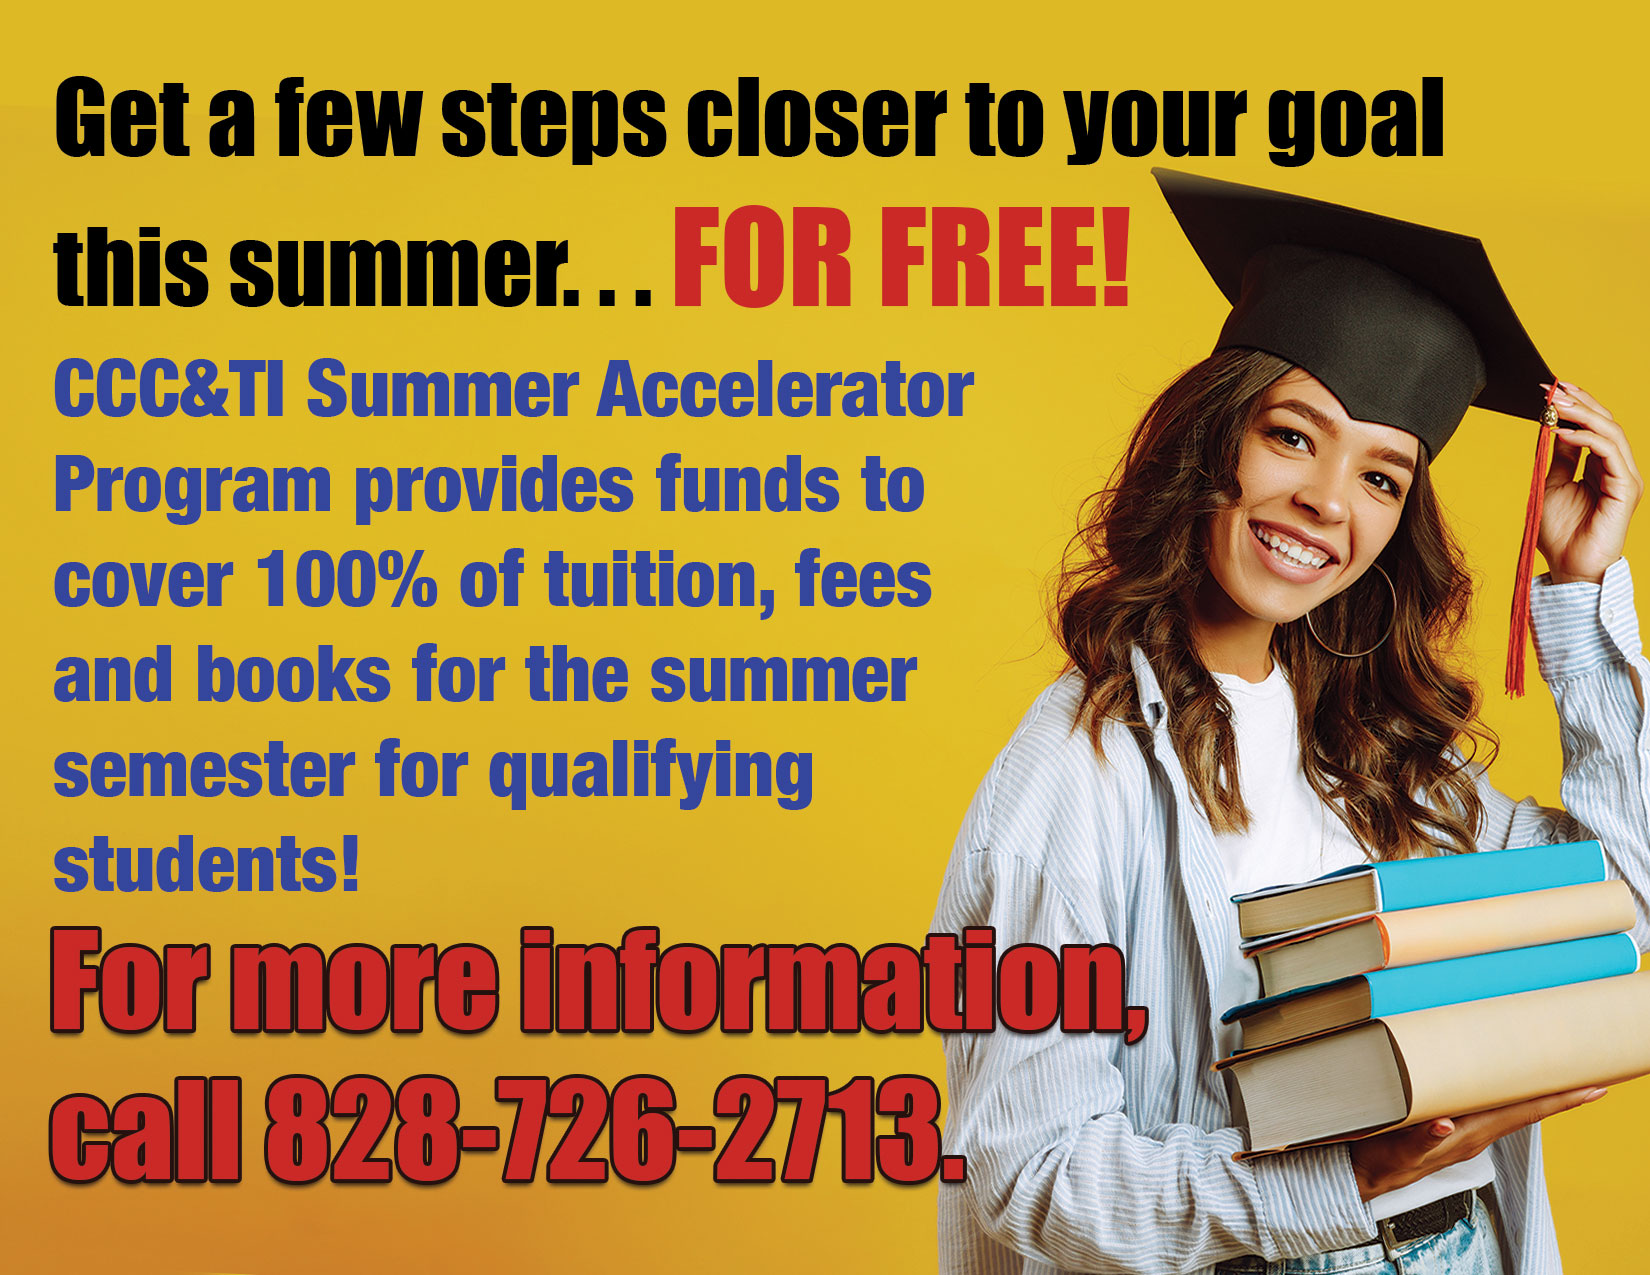 ad for Summer Accelerator Grant program